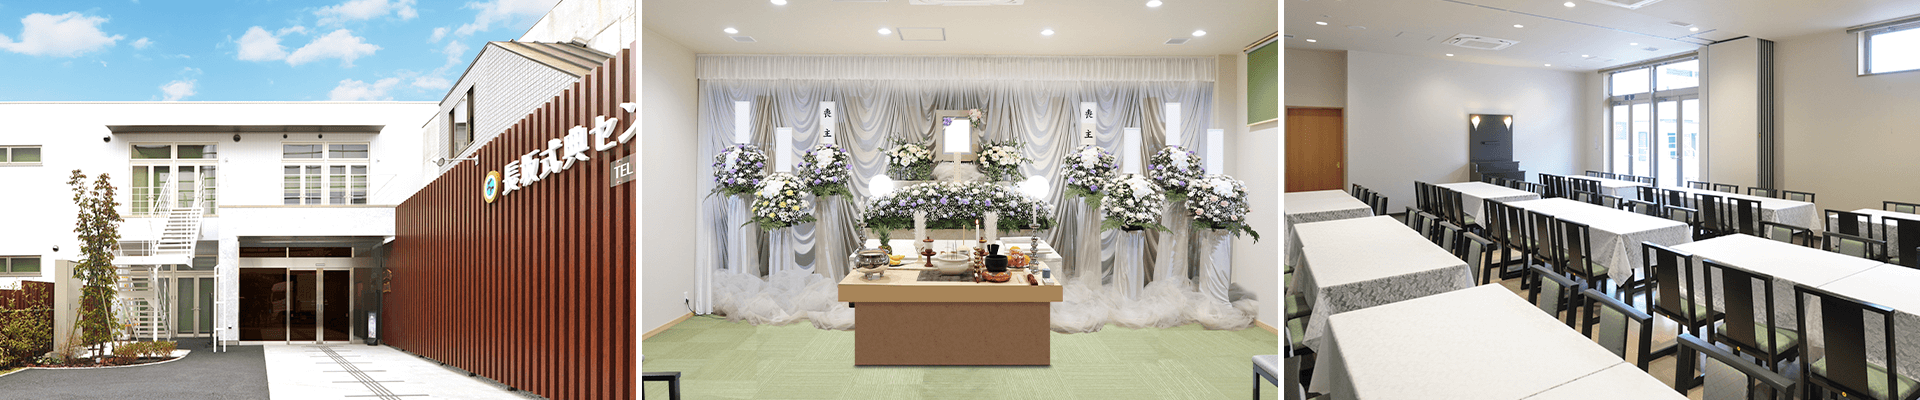 葬儀・葬式・家族葬なら16.5万円からできる長坂式典センター 入間市の葬儀場一覧